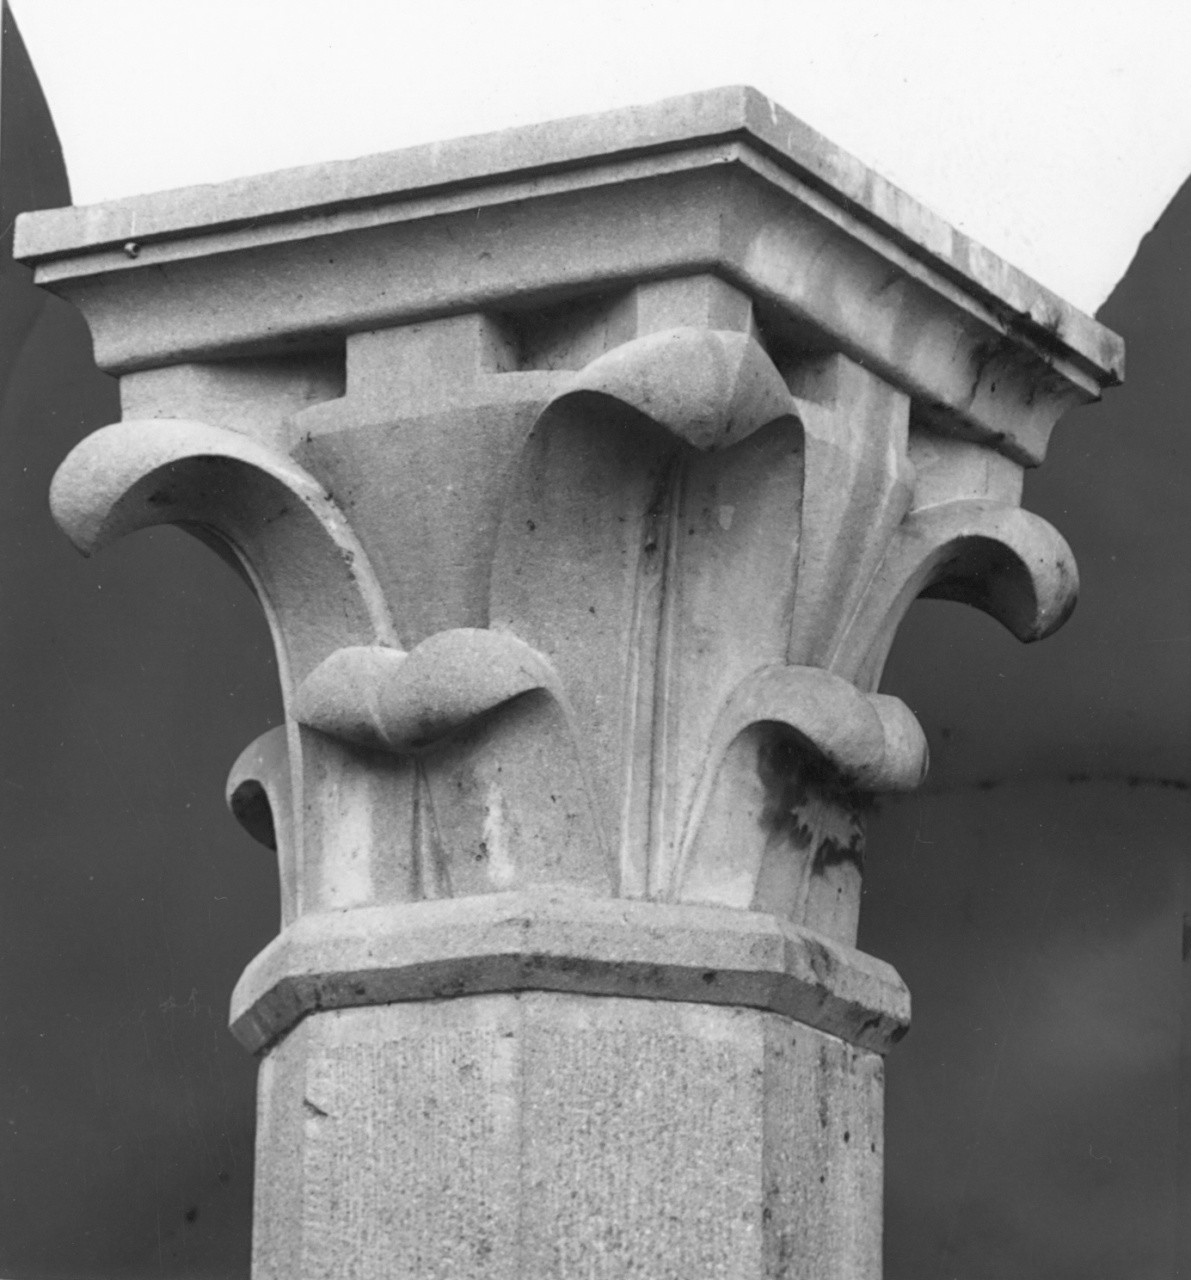 motivi decorativi vegetali (capitello di pilastro) - produzione toscana (inizio sec. XV)